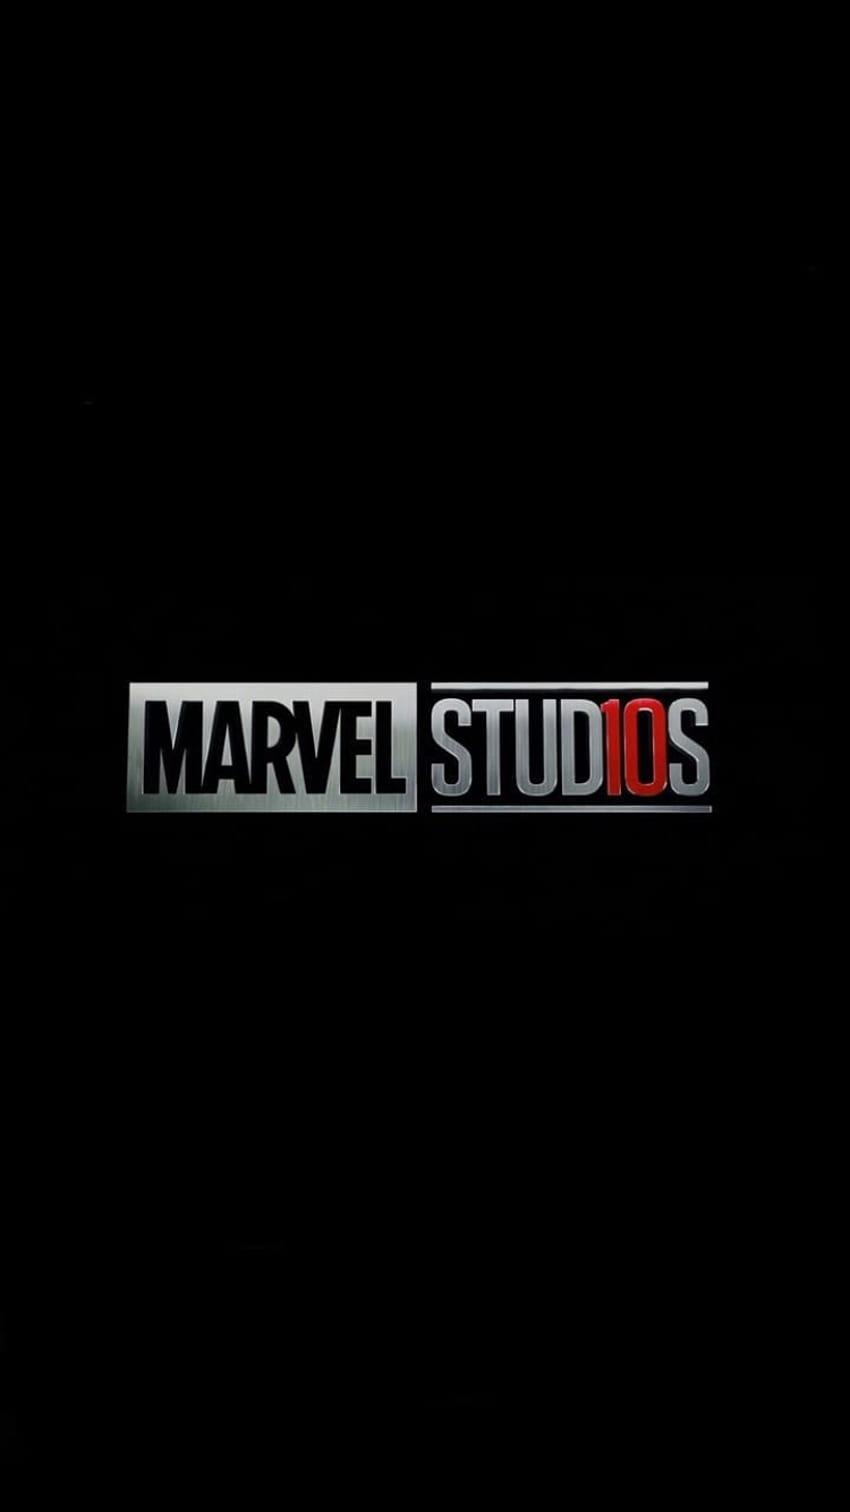 Daftar Latar Belakang Marvel Terbaik untuk iPhone Hari Ini. Marvel, Logo Marvel Studios wallpaper ponsel HD